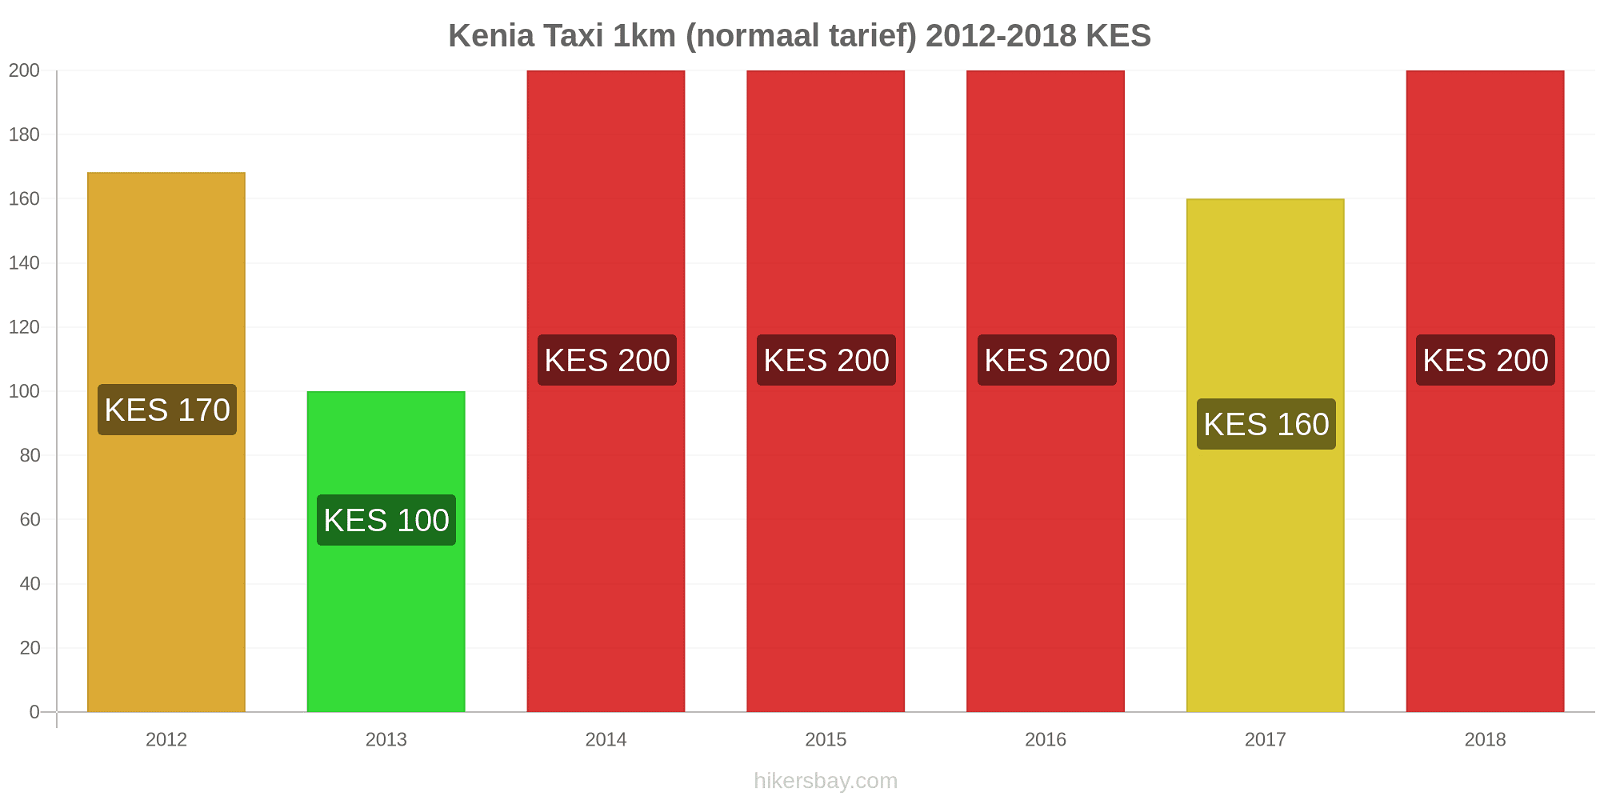 Kenia prijswijzigingen Taxi 1km (normaal tarief) hikersbay.com